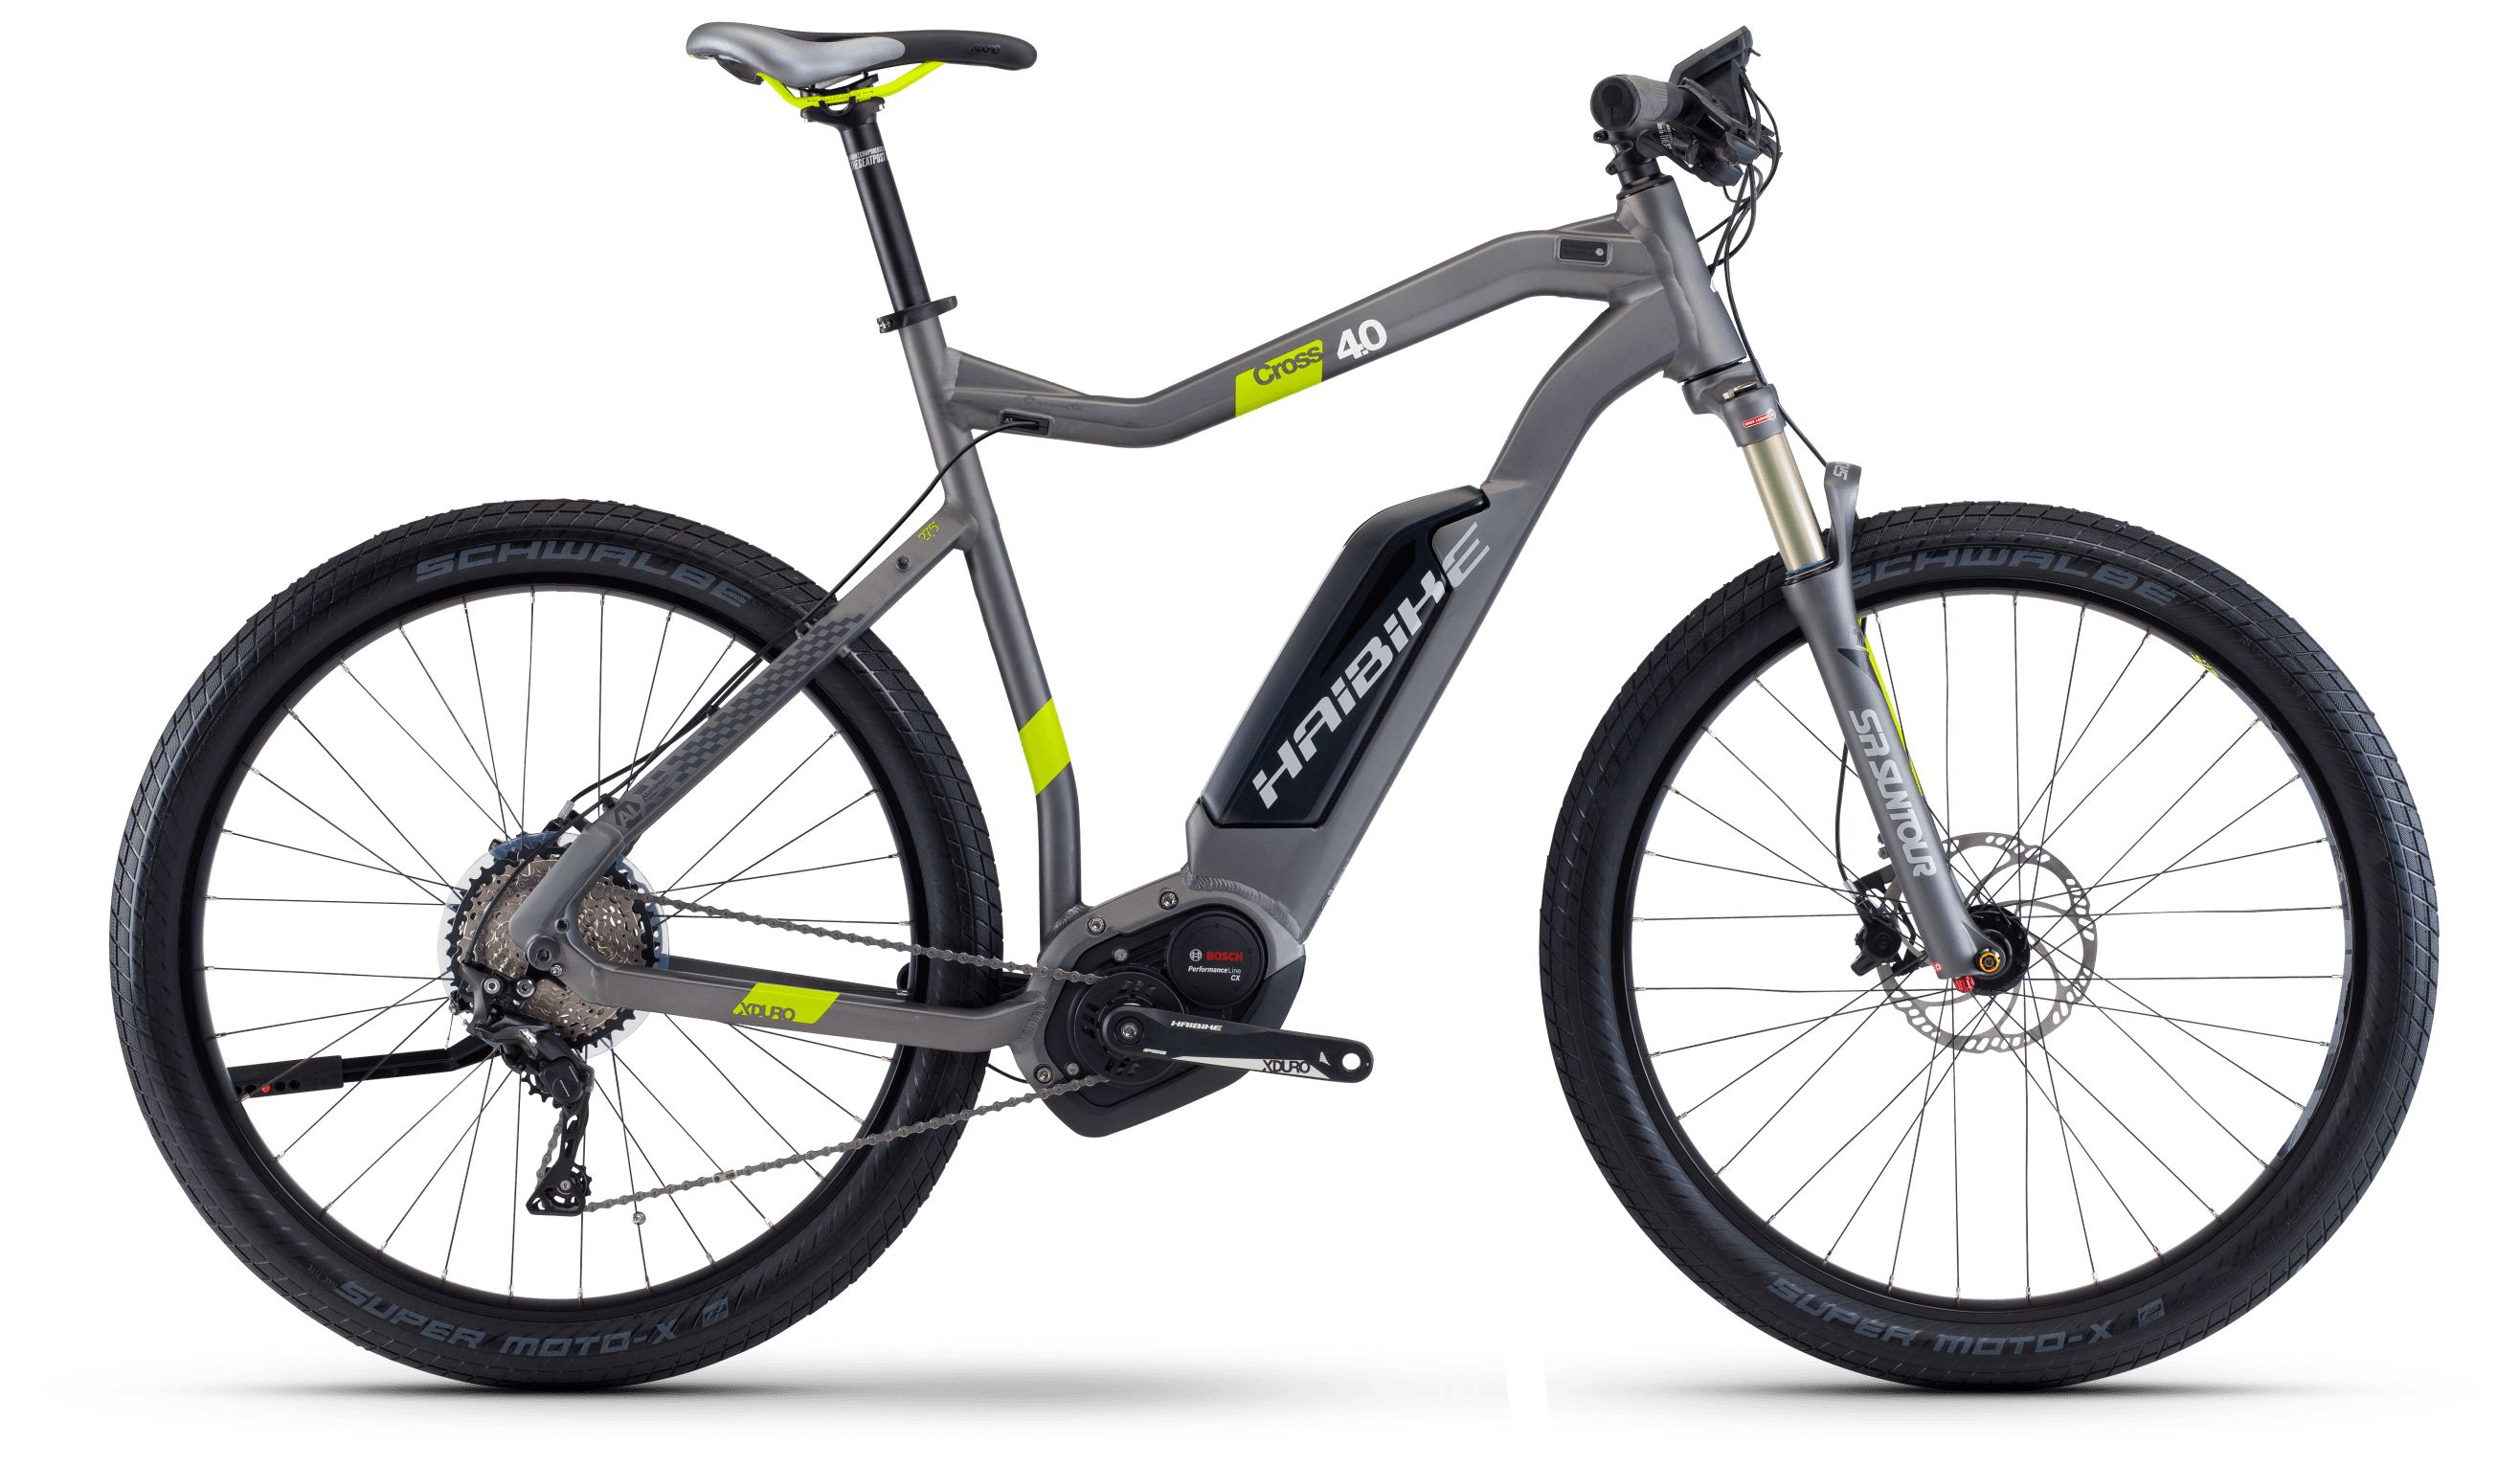  Велосипед Haibike Xduro Cross 4.0 500Wh 2017